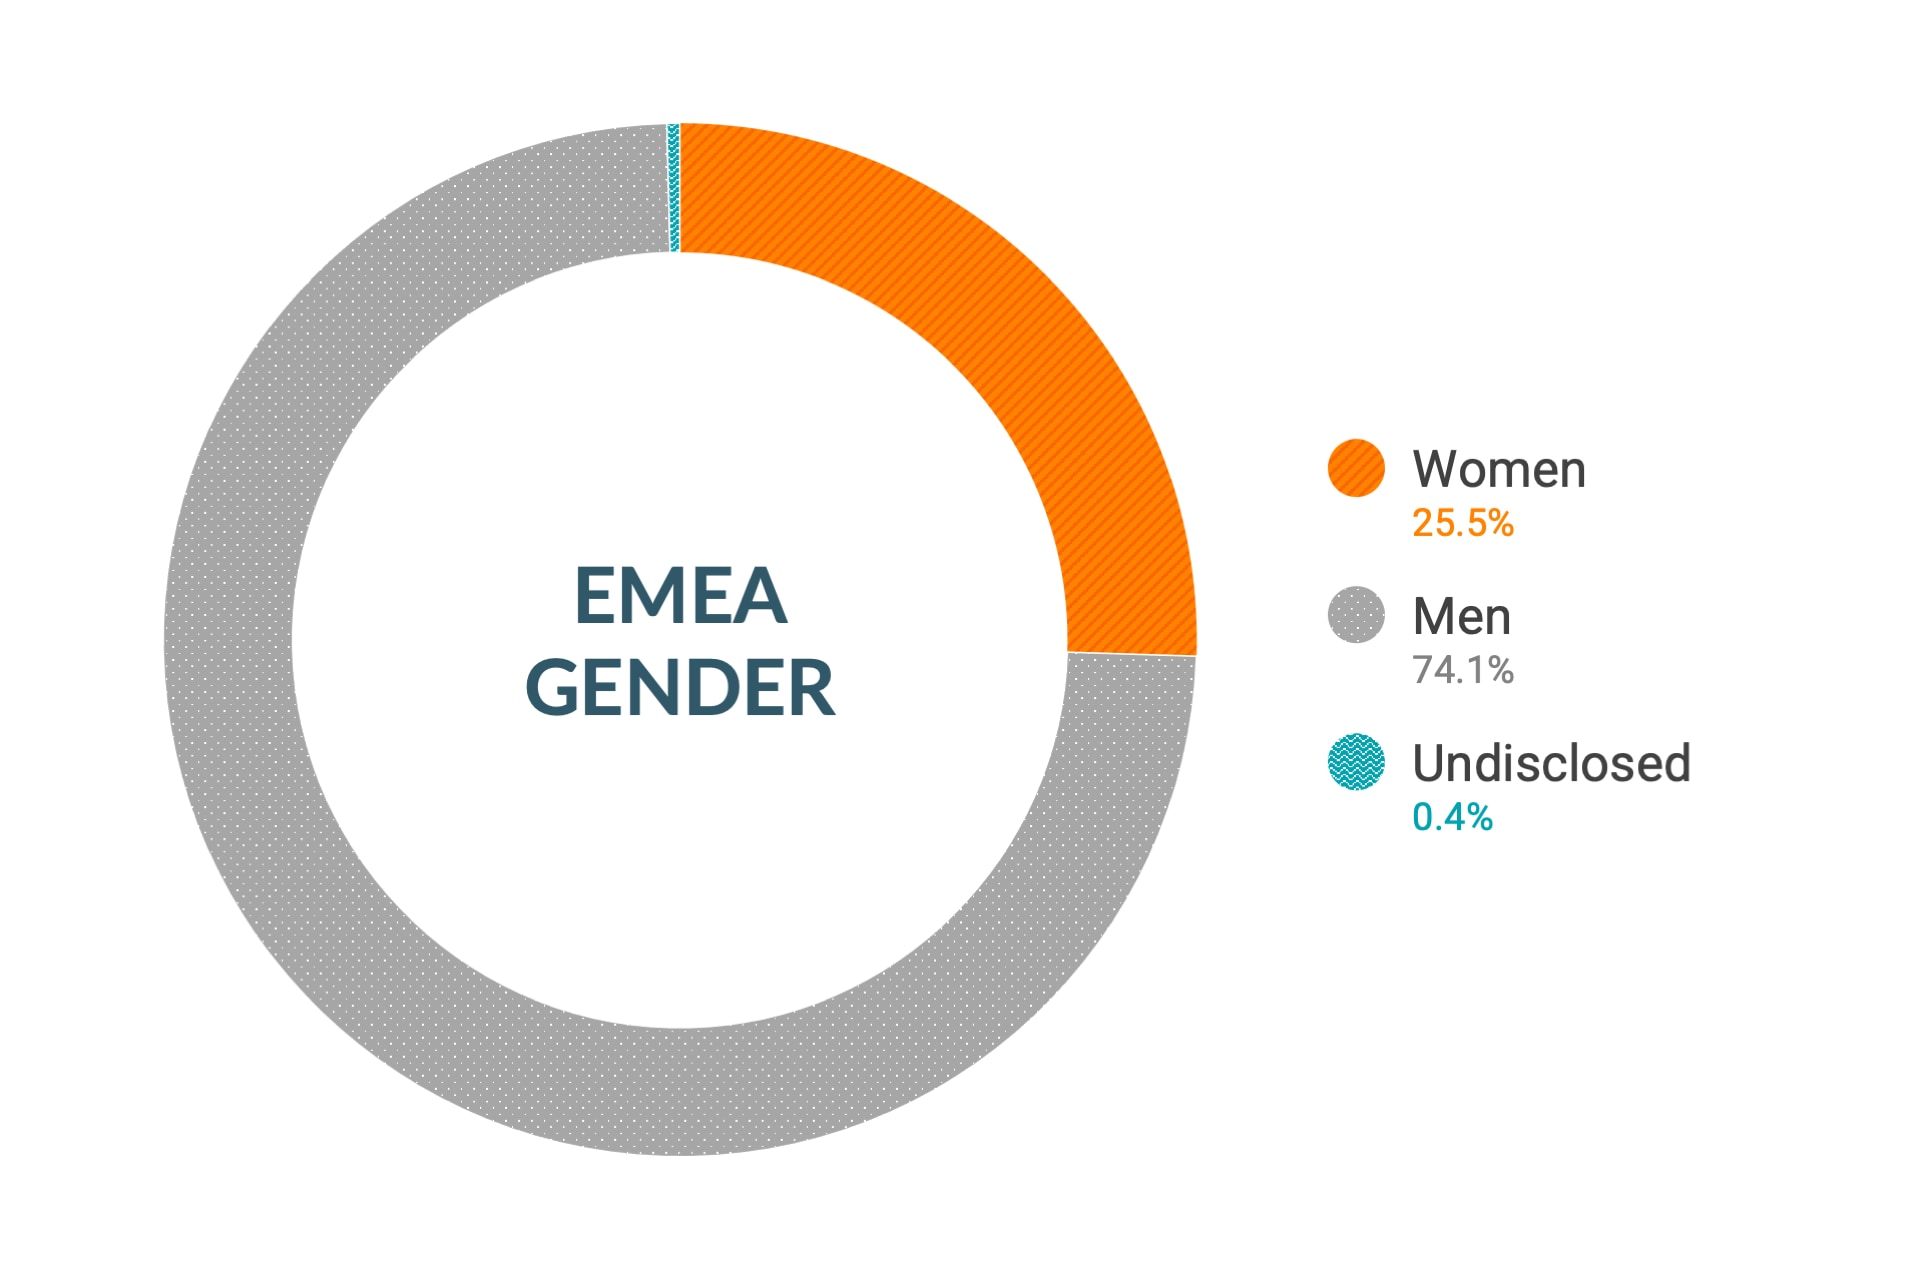 Dane firmy Cloudera dotyczące różnorodności i integracji dla płci w regionie Europa, Bliski Wschód i Afryka: kobiety 21%, mężczyźni 78%, nieujawnione 1%